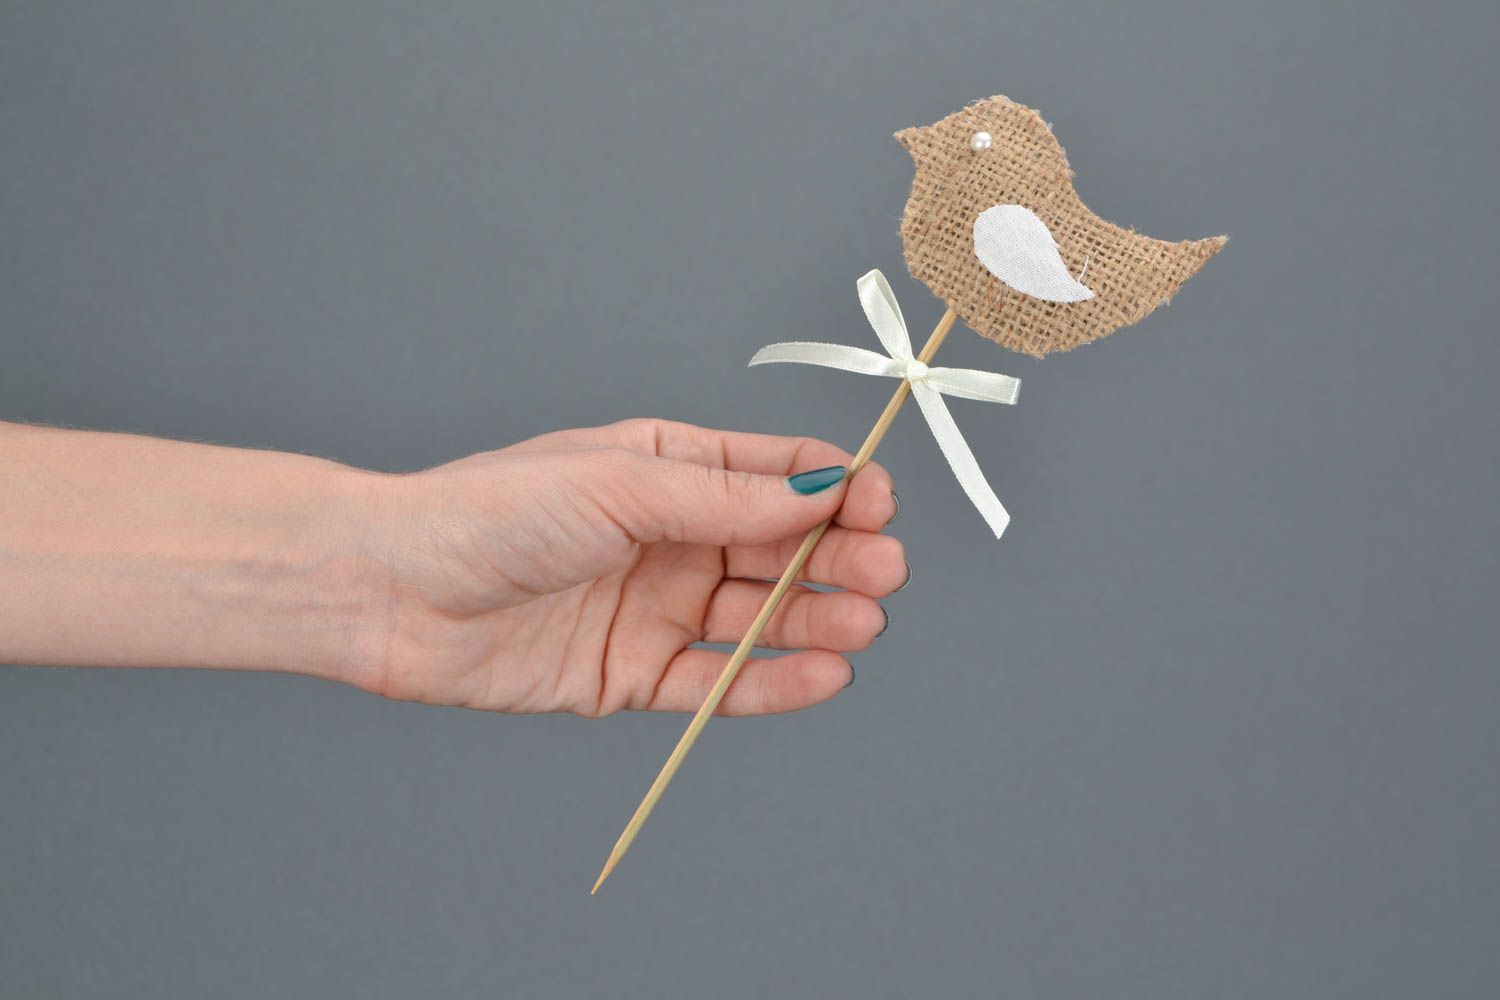 Маленькая игрушка на палочке птичка с бантиком бежевая красивая ручной работы фото 2